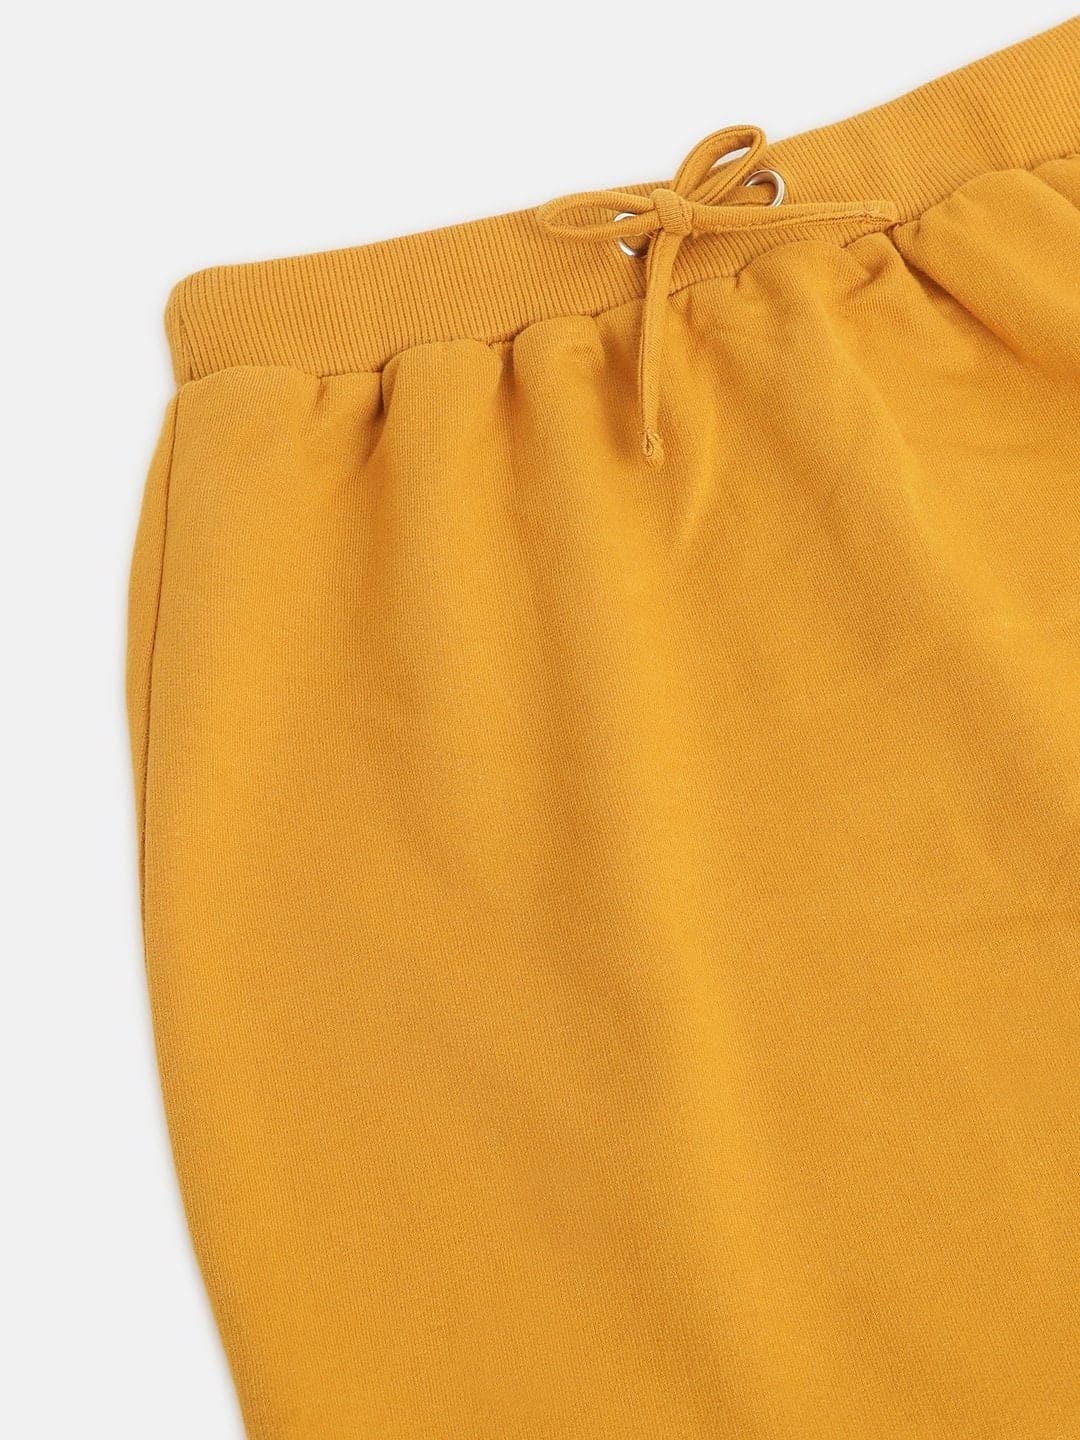 Girls Mustard Terry Mini Skirt - Lyush Kids